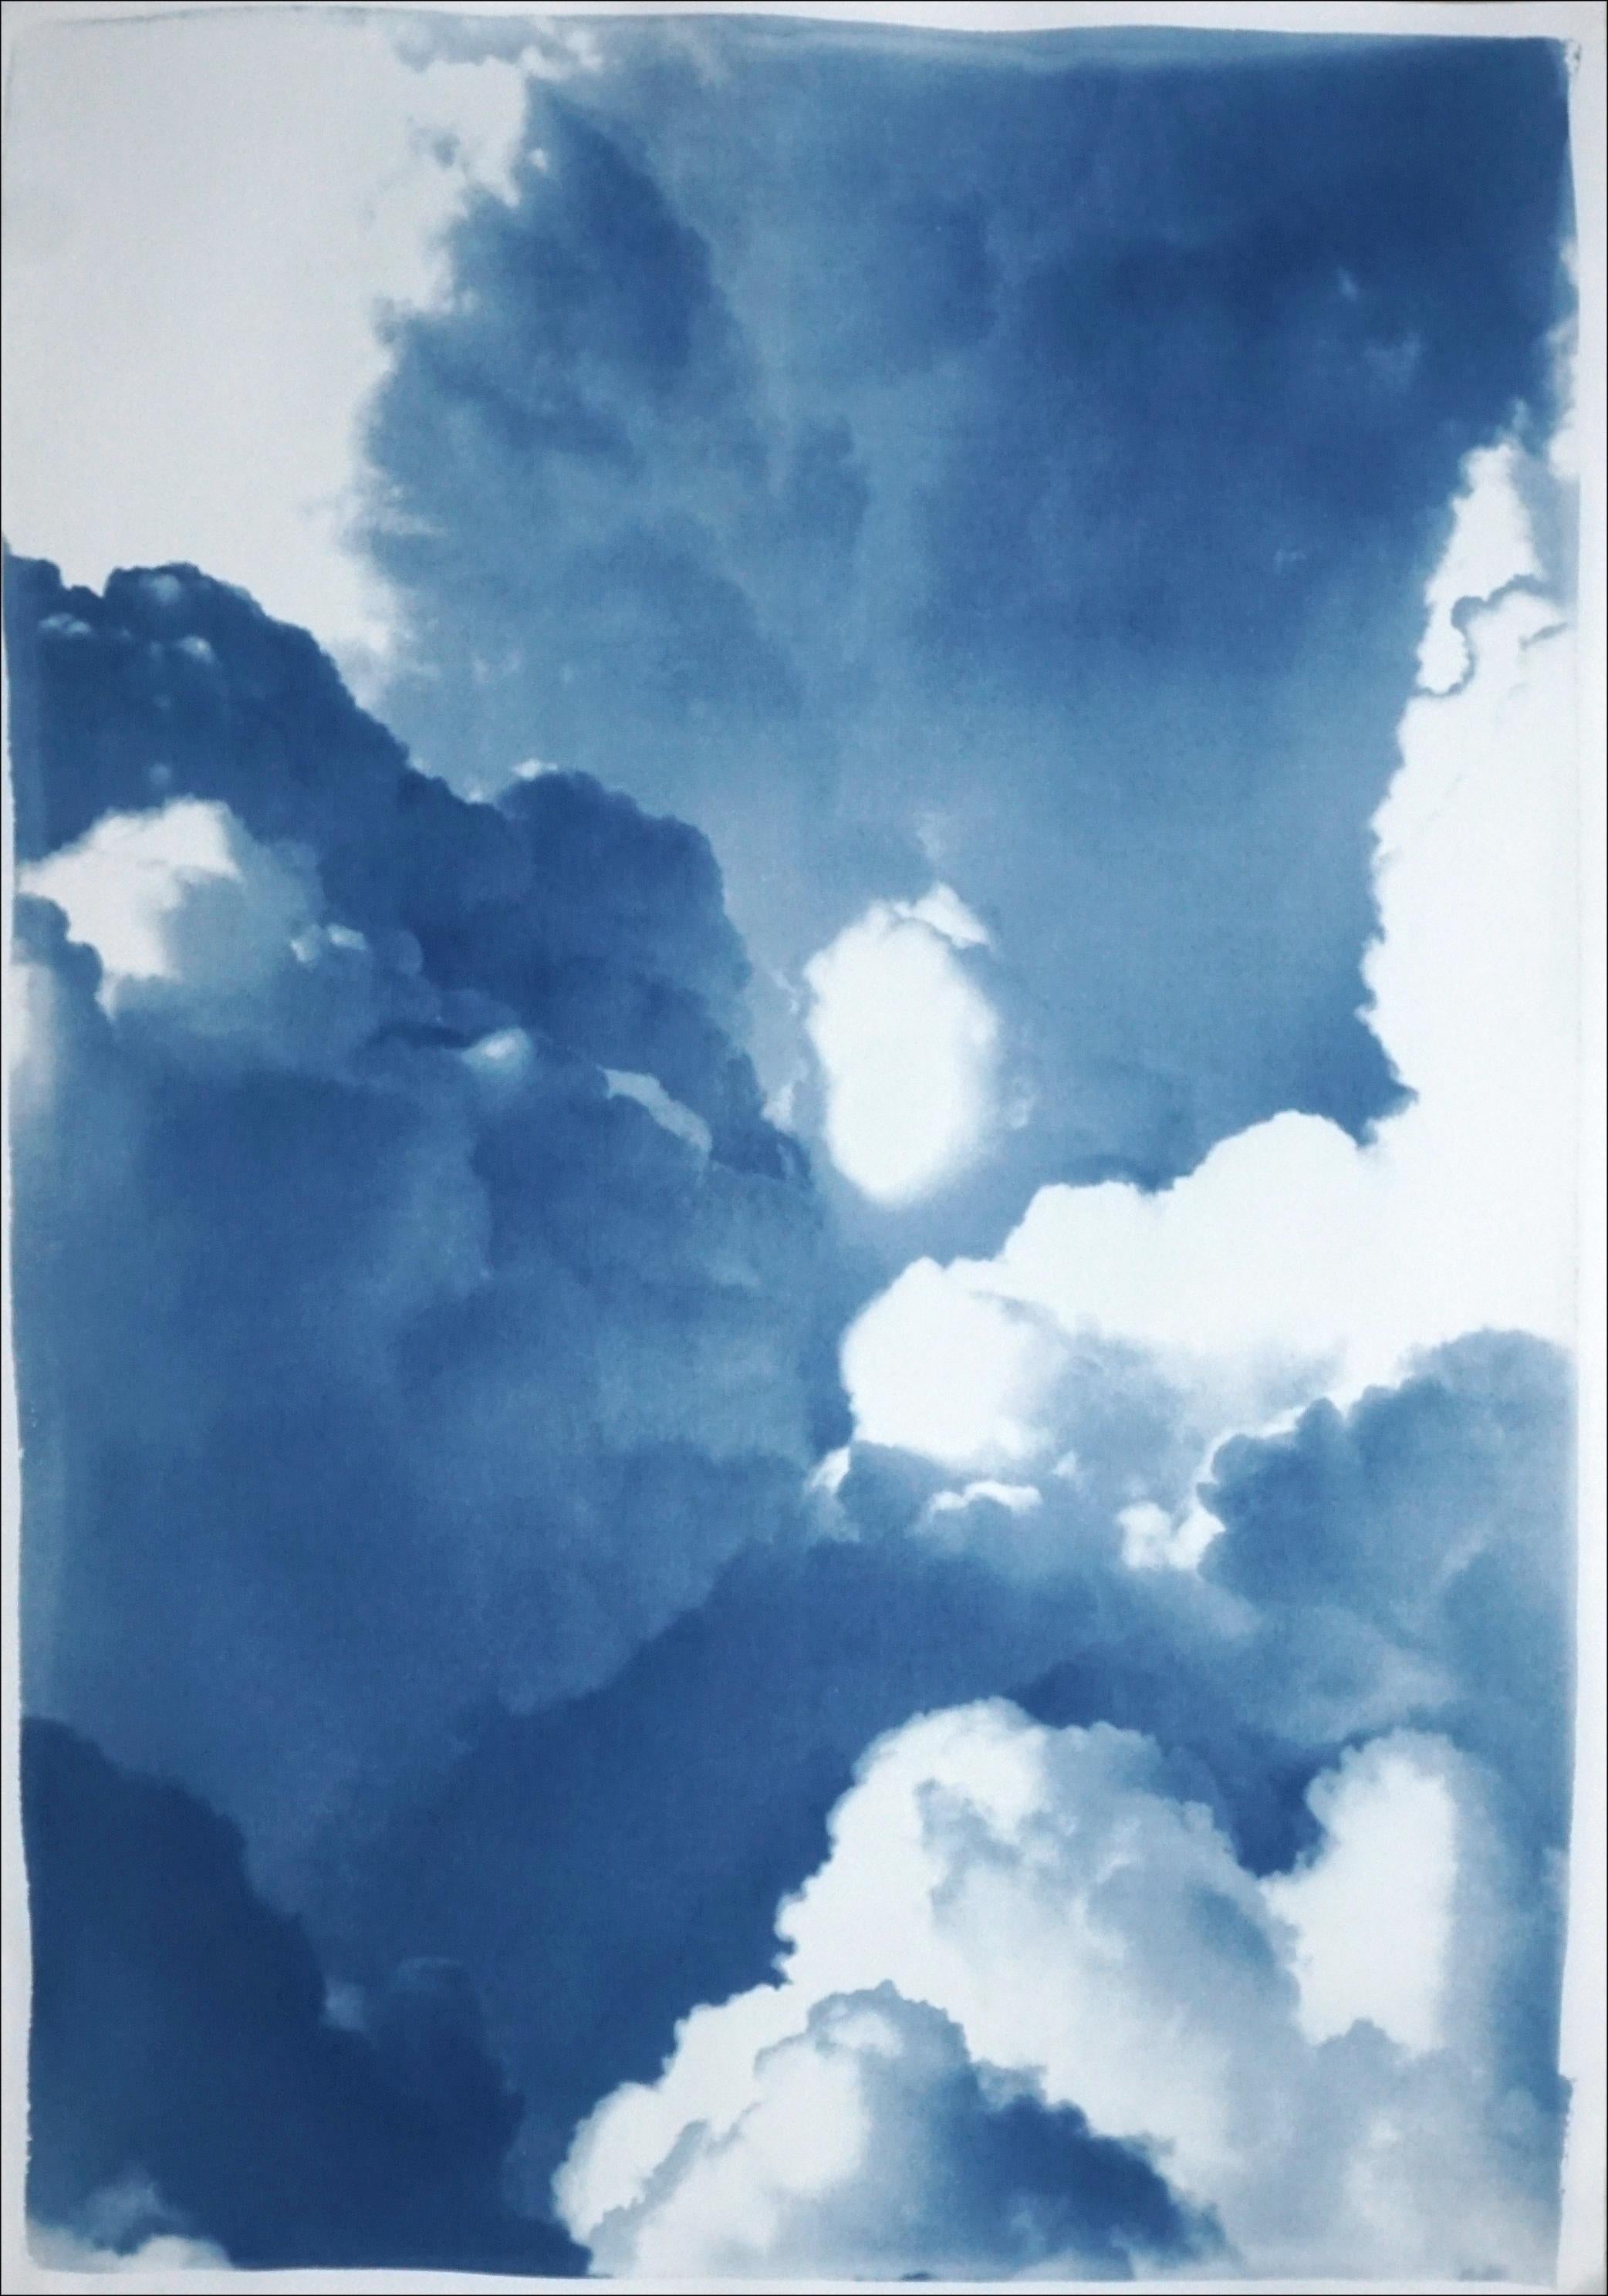 Il s'agit d'un cyanotype exclusif, imprimé à la main et en édition limitée, représentant de magnifiques nuages roulants. 

Détails :
+ Titre : Nuages denses et roulants
+ Année : 2024
+ Taille de l'édition : 100
+ Tampon et certificat d'authenticité